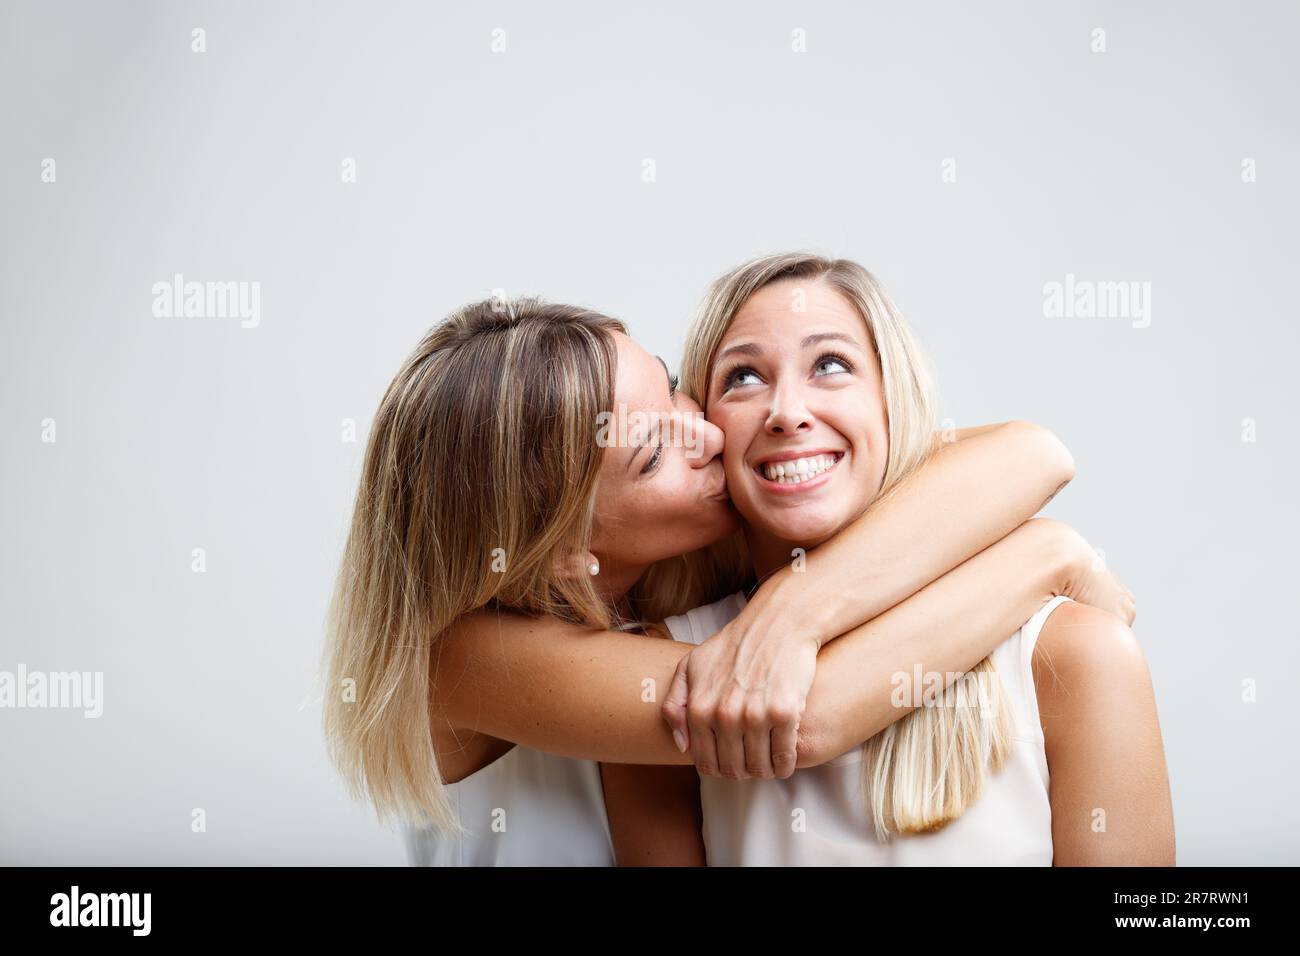 Deux femmes blondes échangent des embrasses affectueuses, des caresses et des baisers de joue. Leur lien reflète la sisterhood, comme ils se posent ensemble affectueusement Banque D'Images